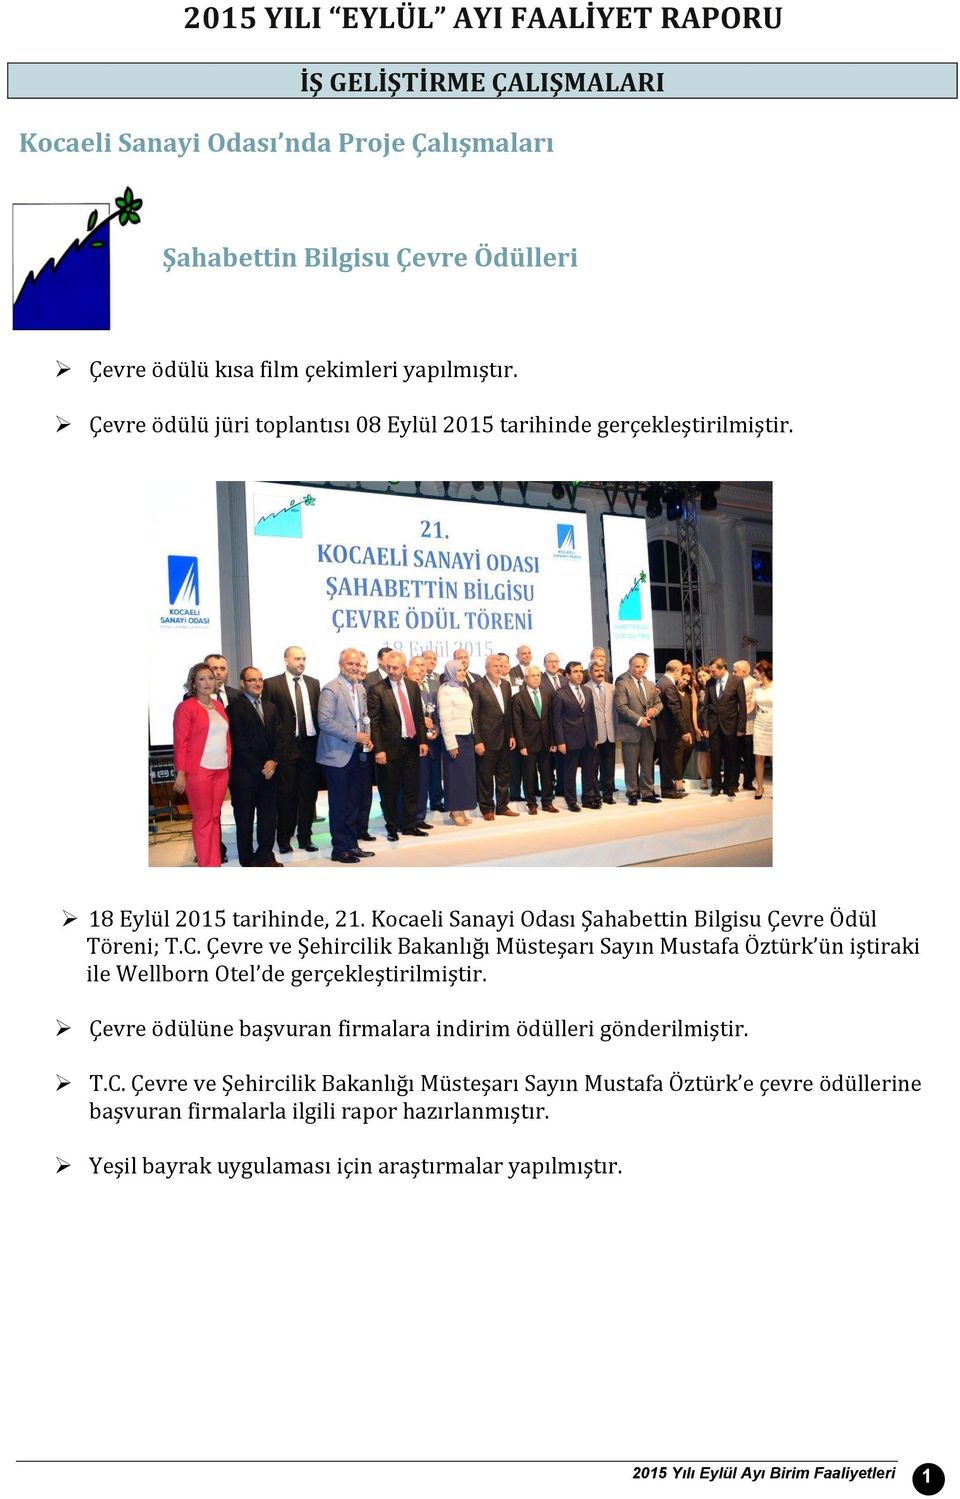 Çevre ve Şehircilik Bakanlığı Müsteşarı Sayın Mustafa Öztürk ün iştiraki ile Wellborn Otel de gerçekleştirilmiştir. Çevre ödülüne başvuran firmalara indirim ödülleri gönderilmiştir. T.C.